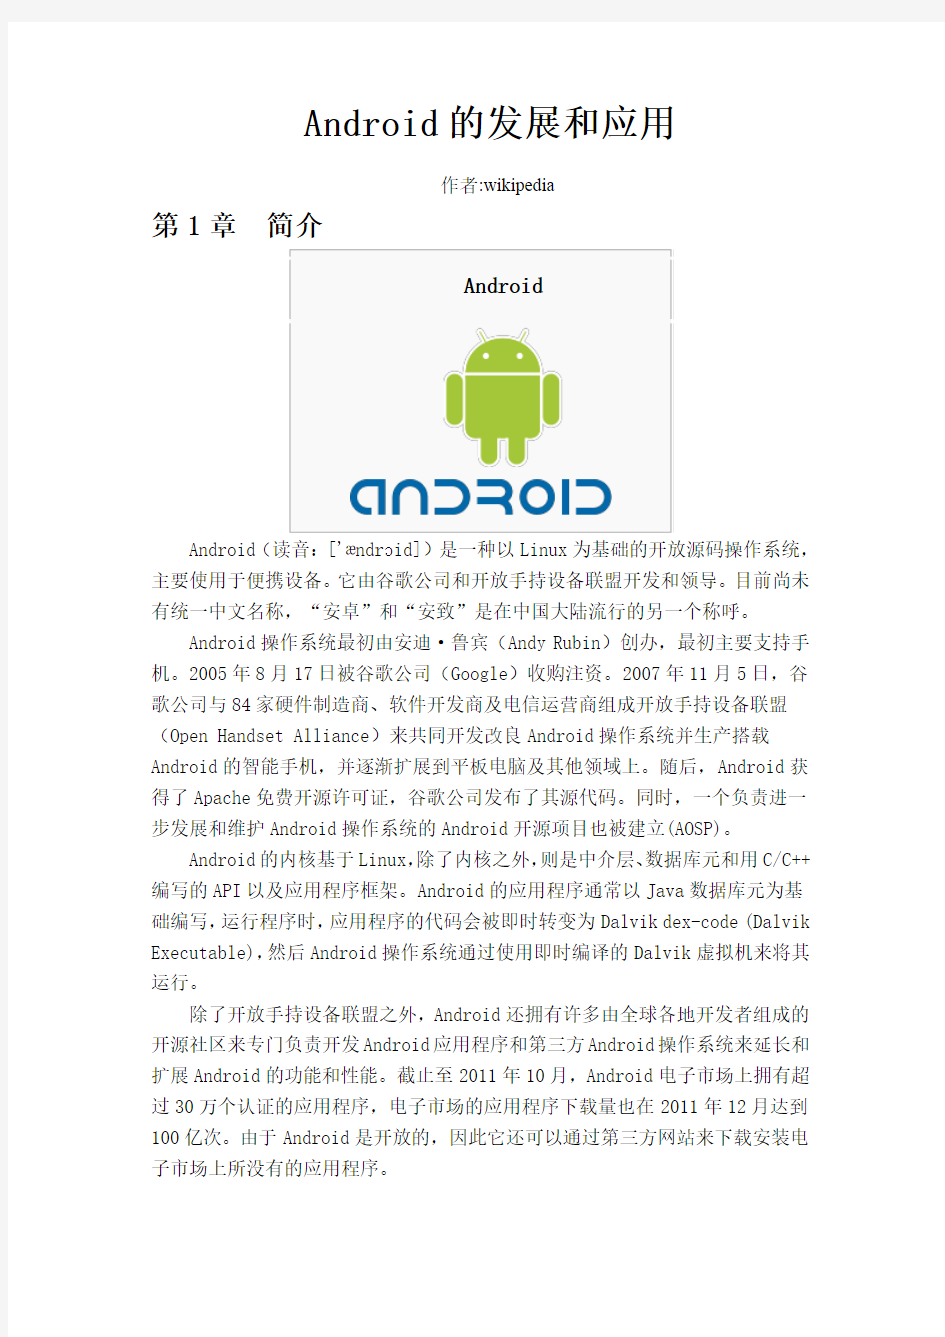 毕设Android平台 英文翻译